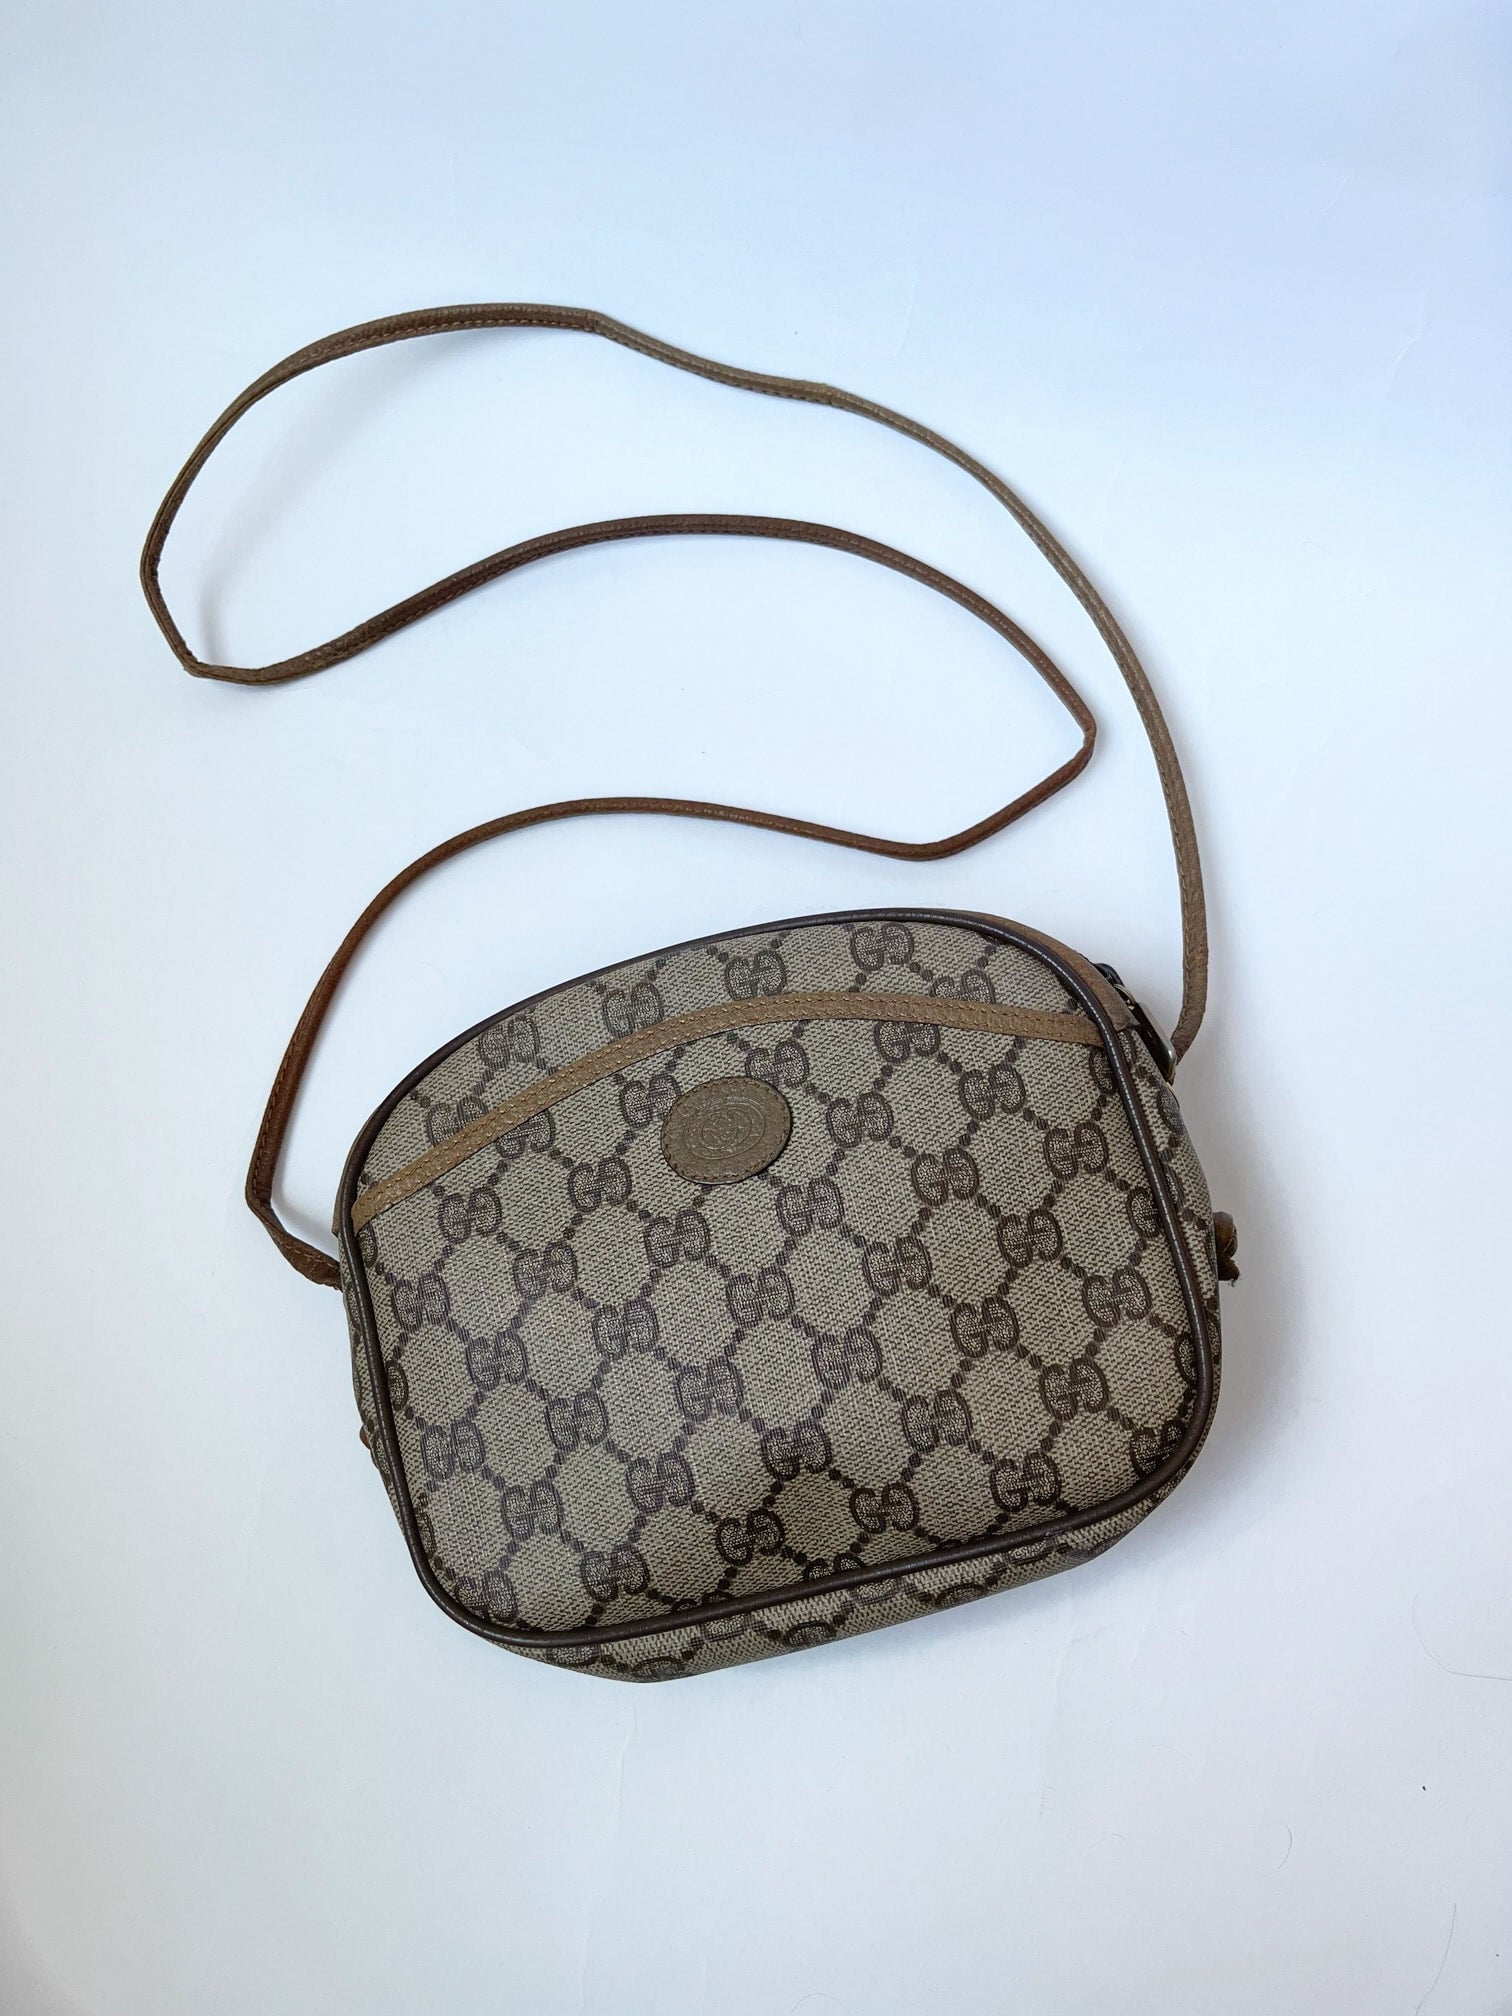 🎀Cartera Louis Vuitton thames la cartera 🎀 🎀precio :150 usd